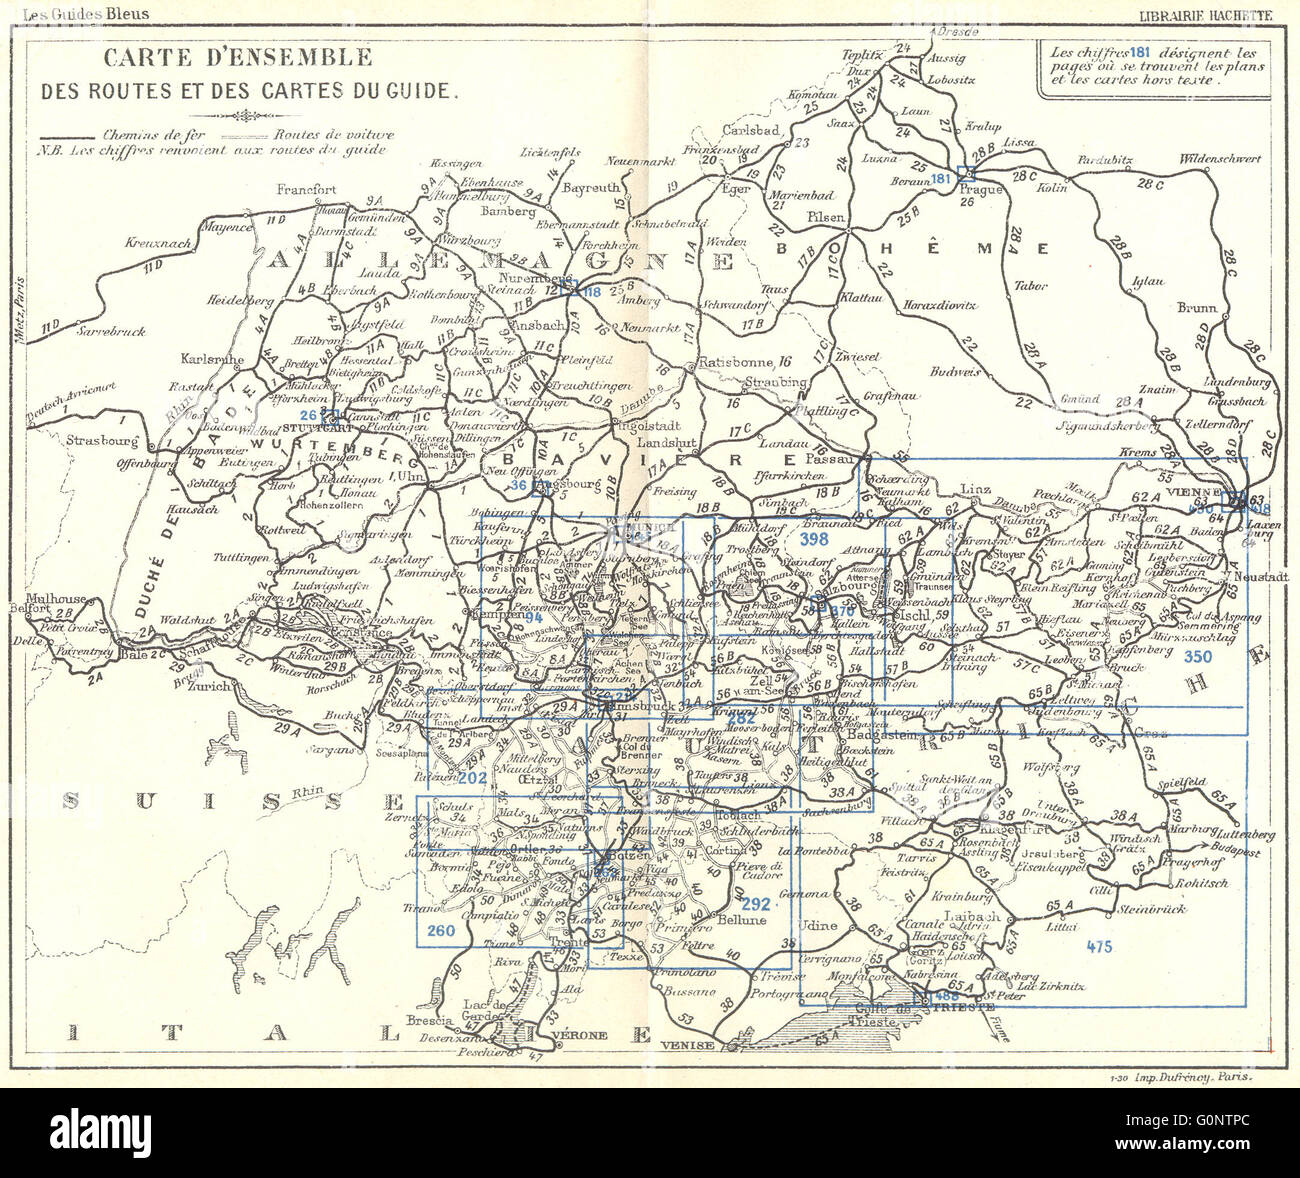 EUROPE: Carte D'Ensemble Route Cartes du Guide, 1914 antique map Stock Photo